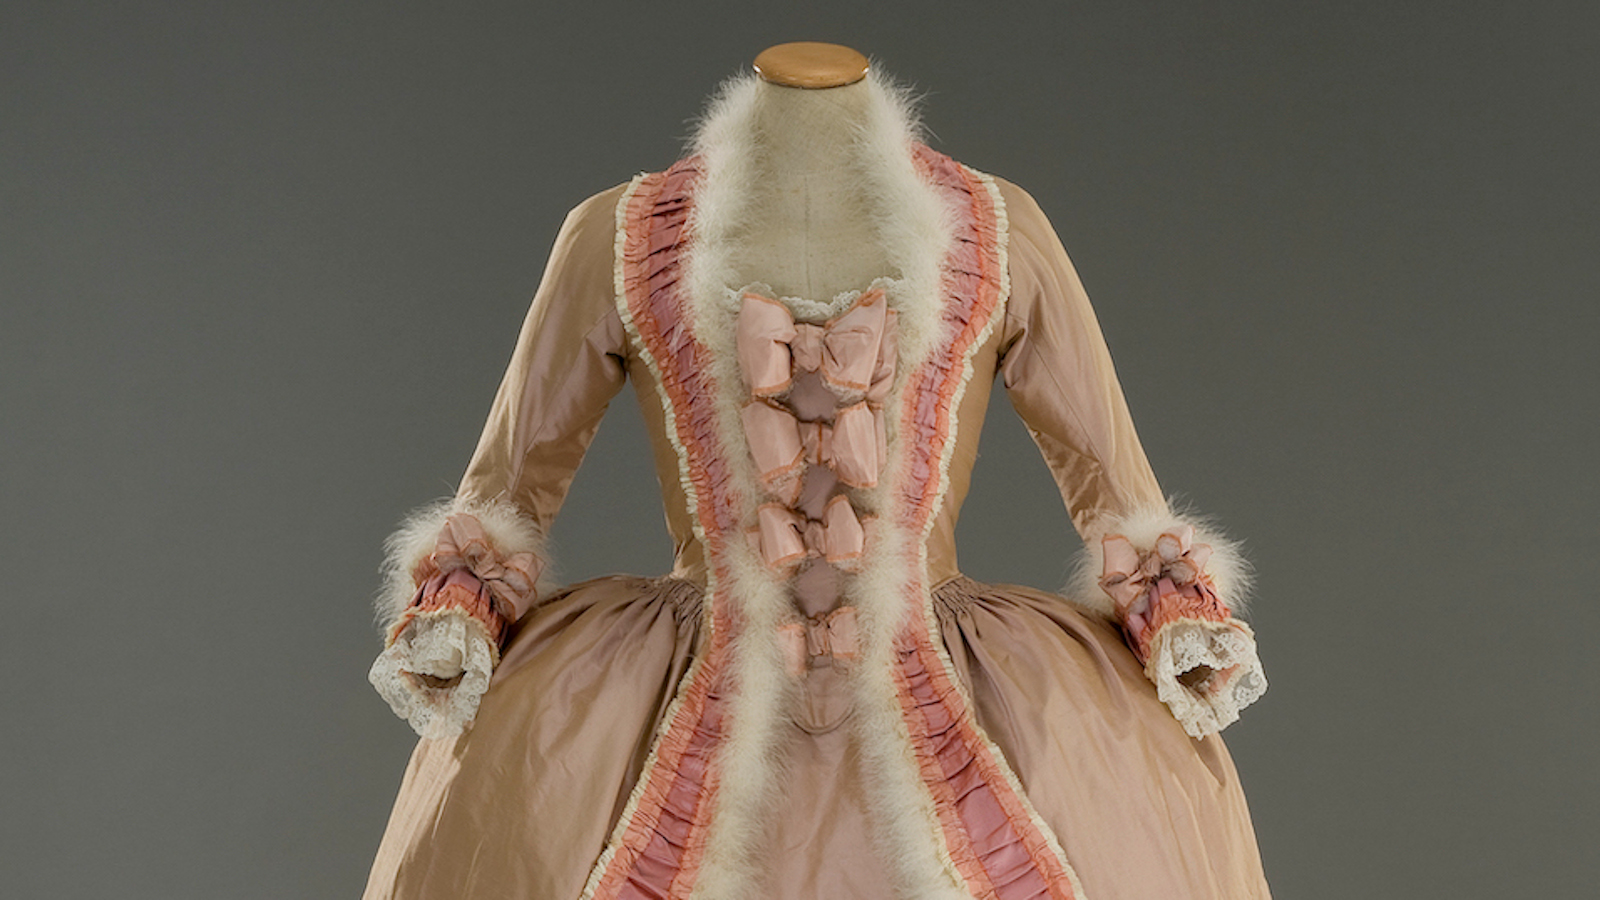 Kuvassa on Marie Antoinette -elokuvan puvun tiukka vaalean ruskea yläosa ja kaula-aukon valkoinen karvareunus sekä rosan väristä koristetta.  